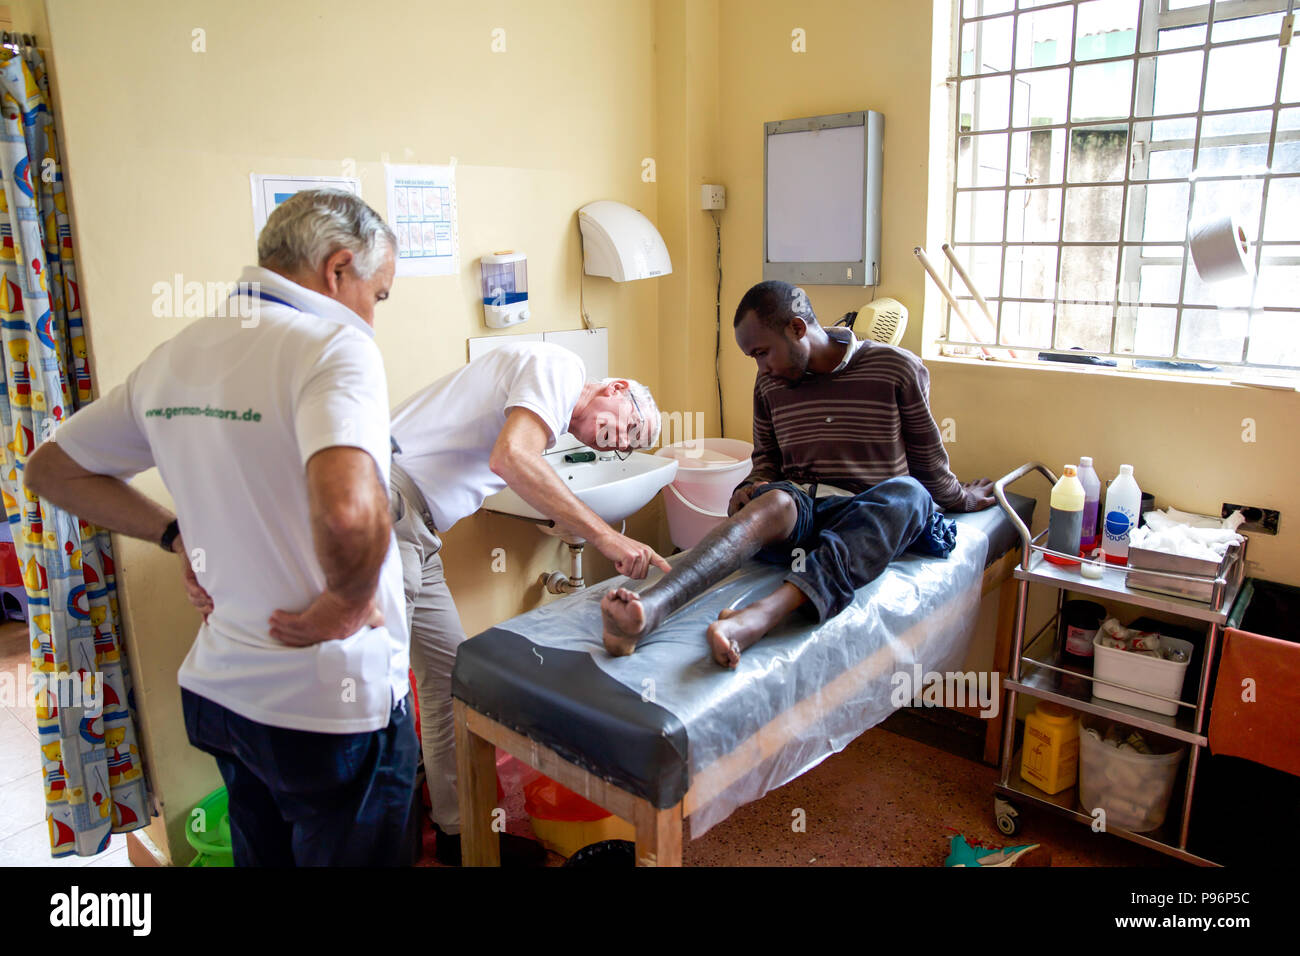 Deutsche ärzte für die medizinische Hilfe in den Slums von Nairobi - Kenia Stockfoto